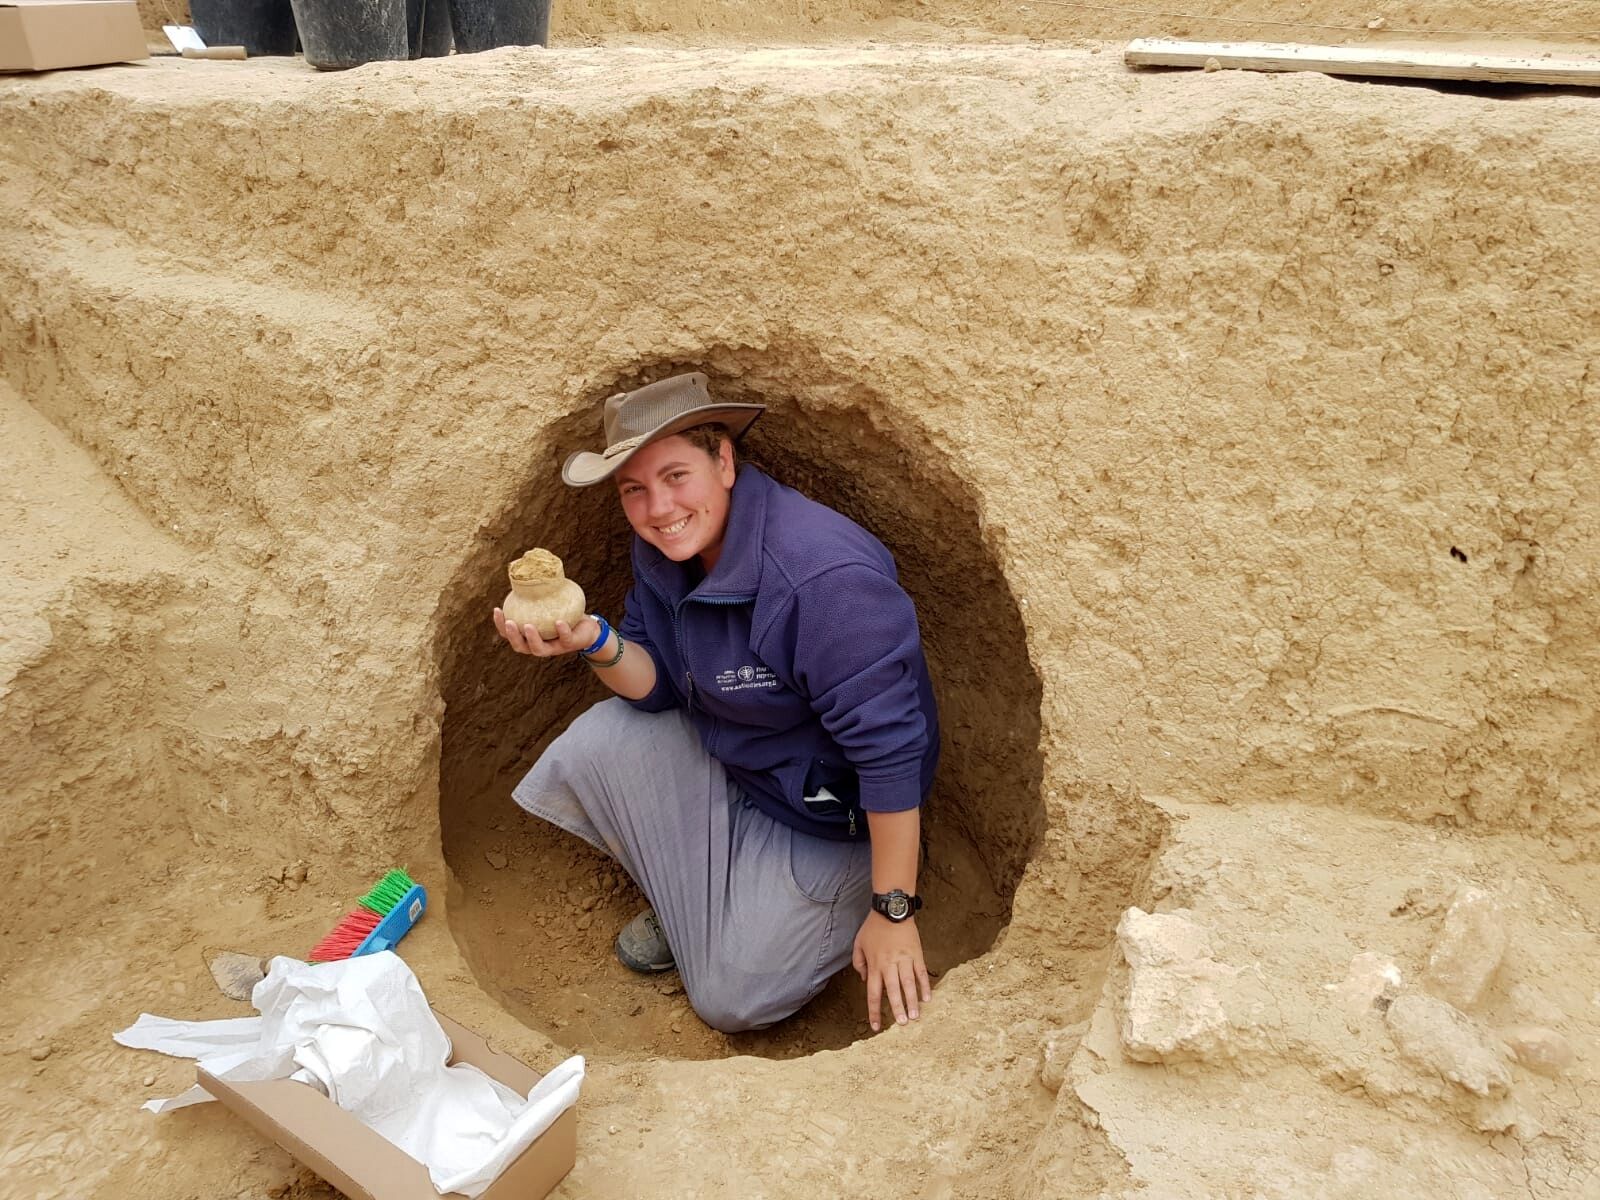  הארכיאולוגית שירה בלוך מחזיקה פך בן 2000 שנמצא בחפירה. צילום: רשות העתיקות